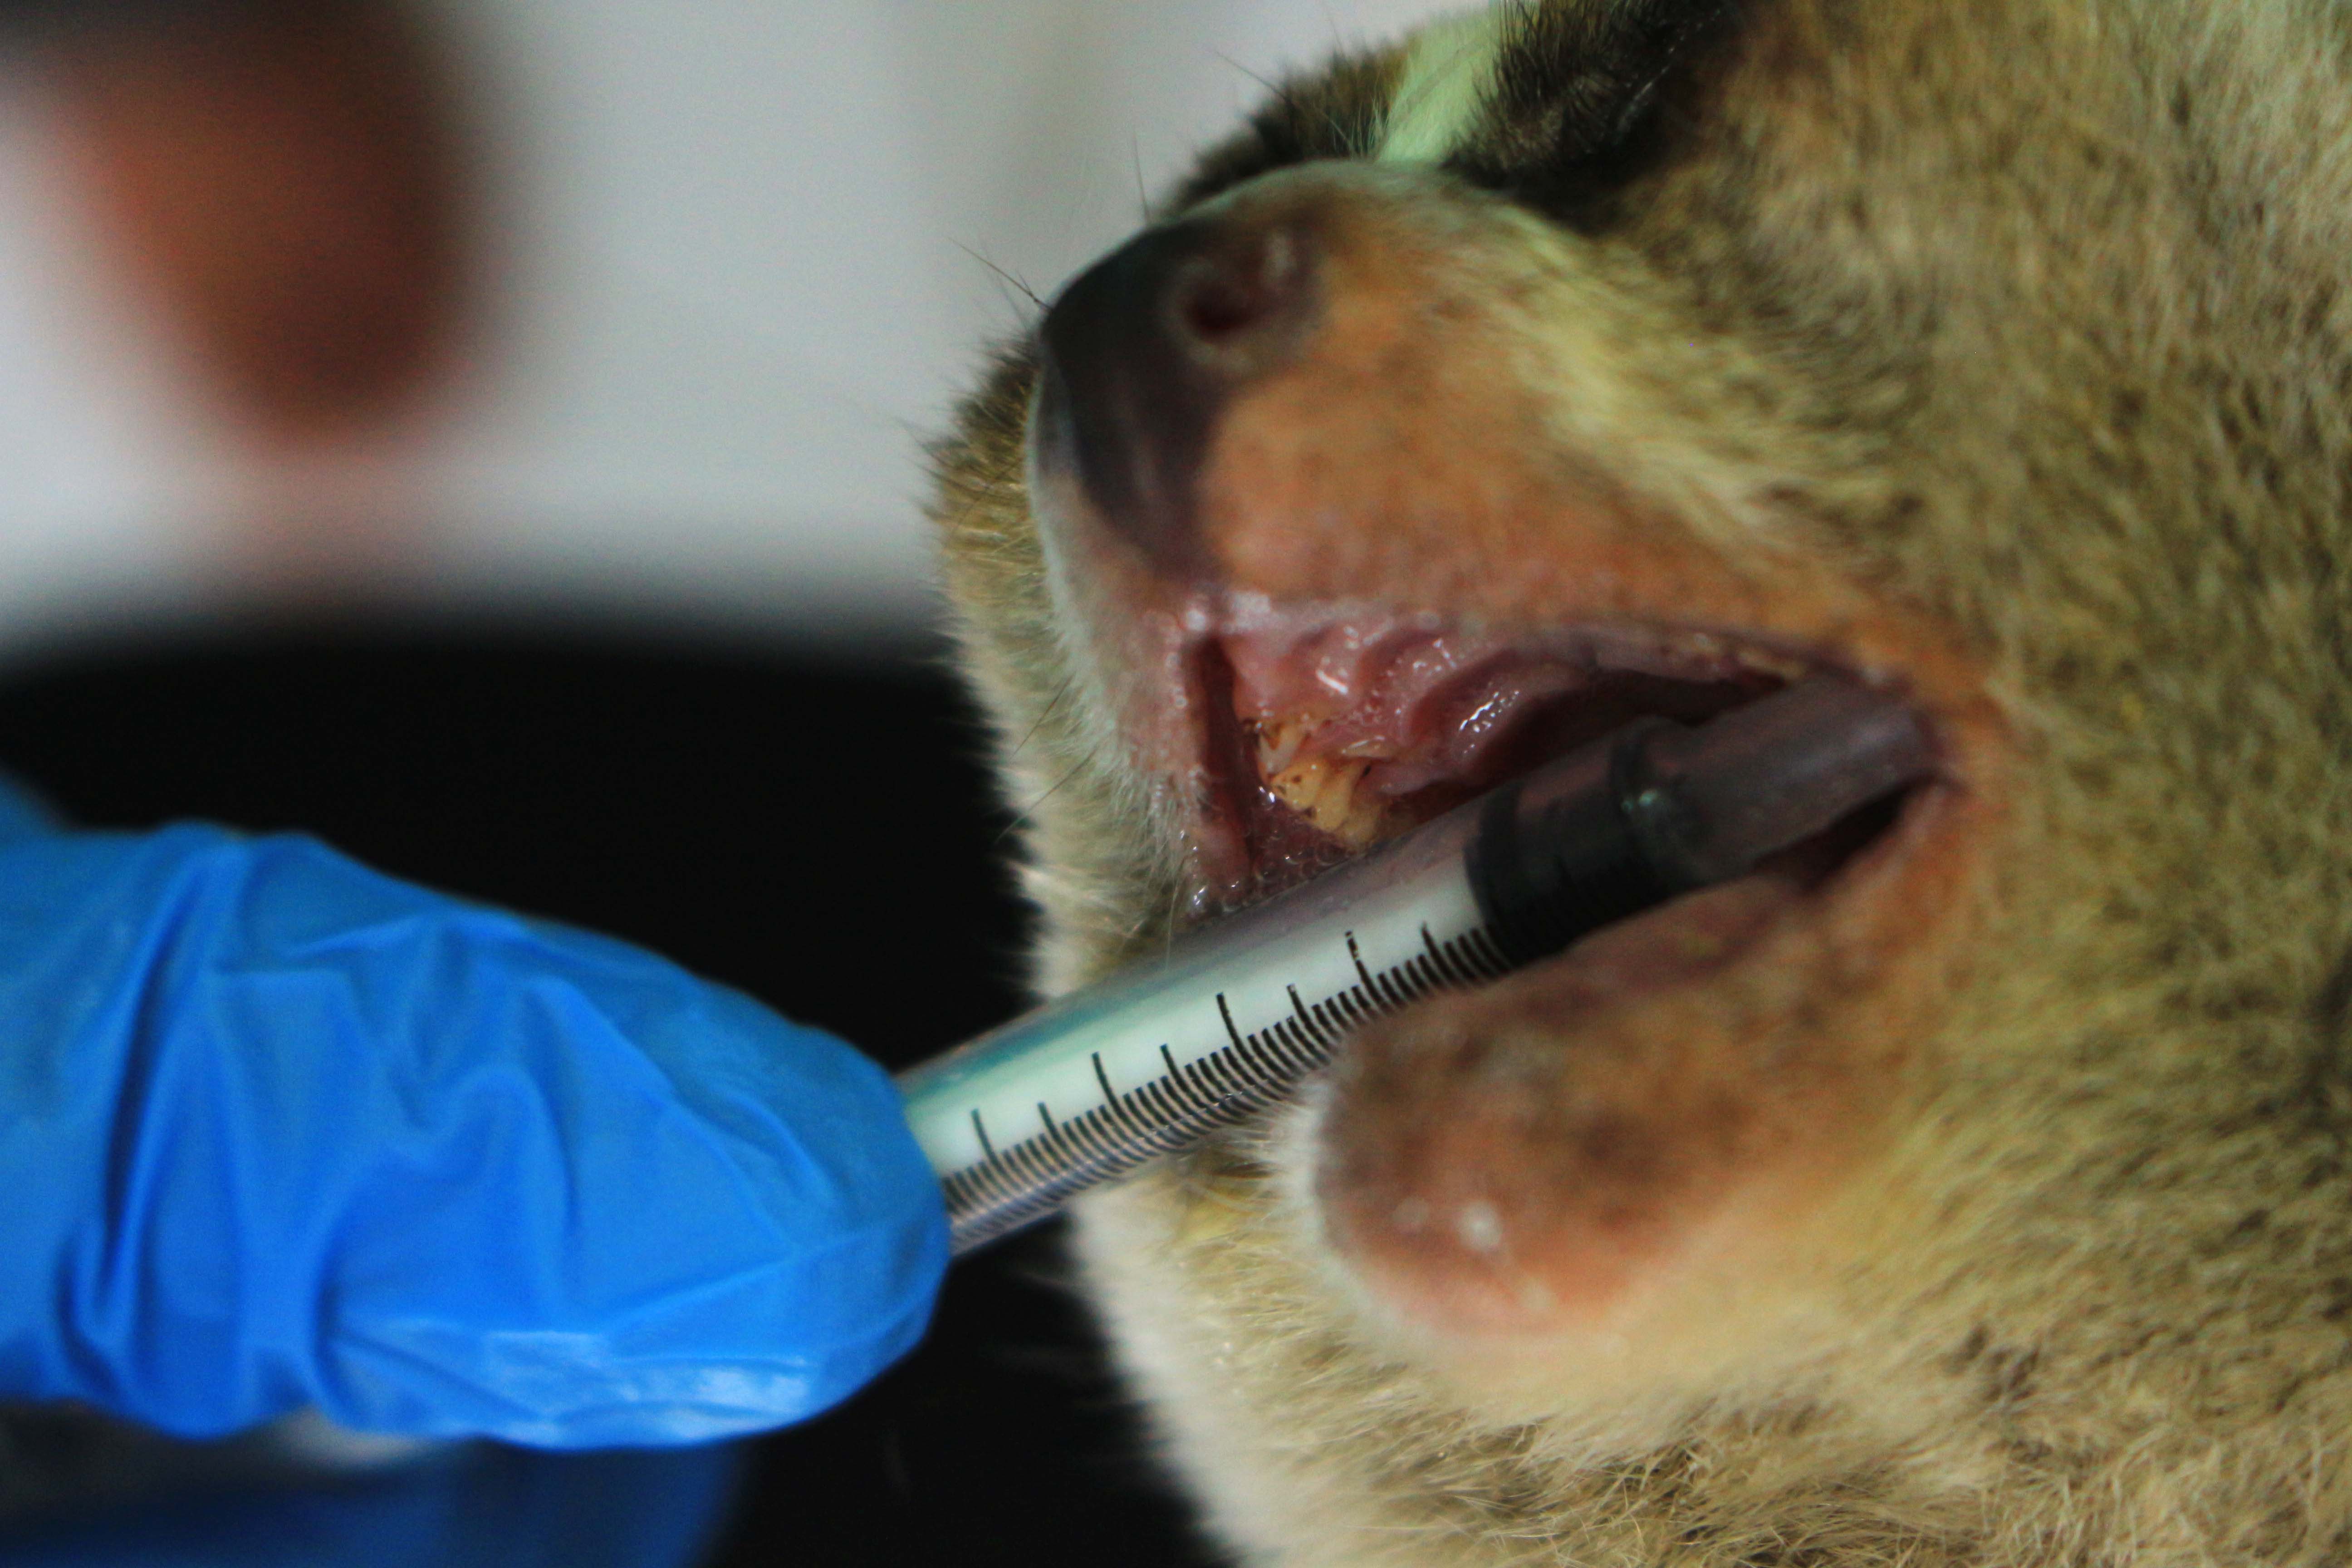 Dokter memperlihat gigi kukang jawa (Nycticebus javanicus) yang telah di potong di Pusat Penyelamatan dan Rehabilitasi Satwa International Animal Rescue (IAR) Indonesia, Bogor, Jawa Barat. Menurut pengamatan IAR, kukang yang taringnya di potong tidak bisa dilepas liarkan. Foto Donny Iqbal